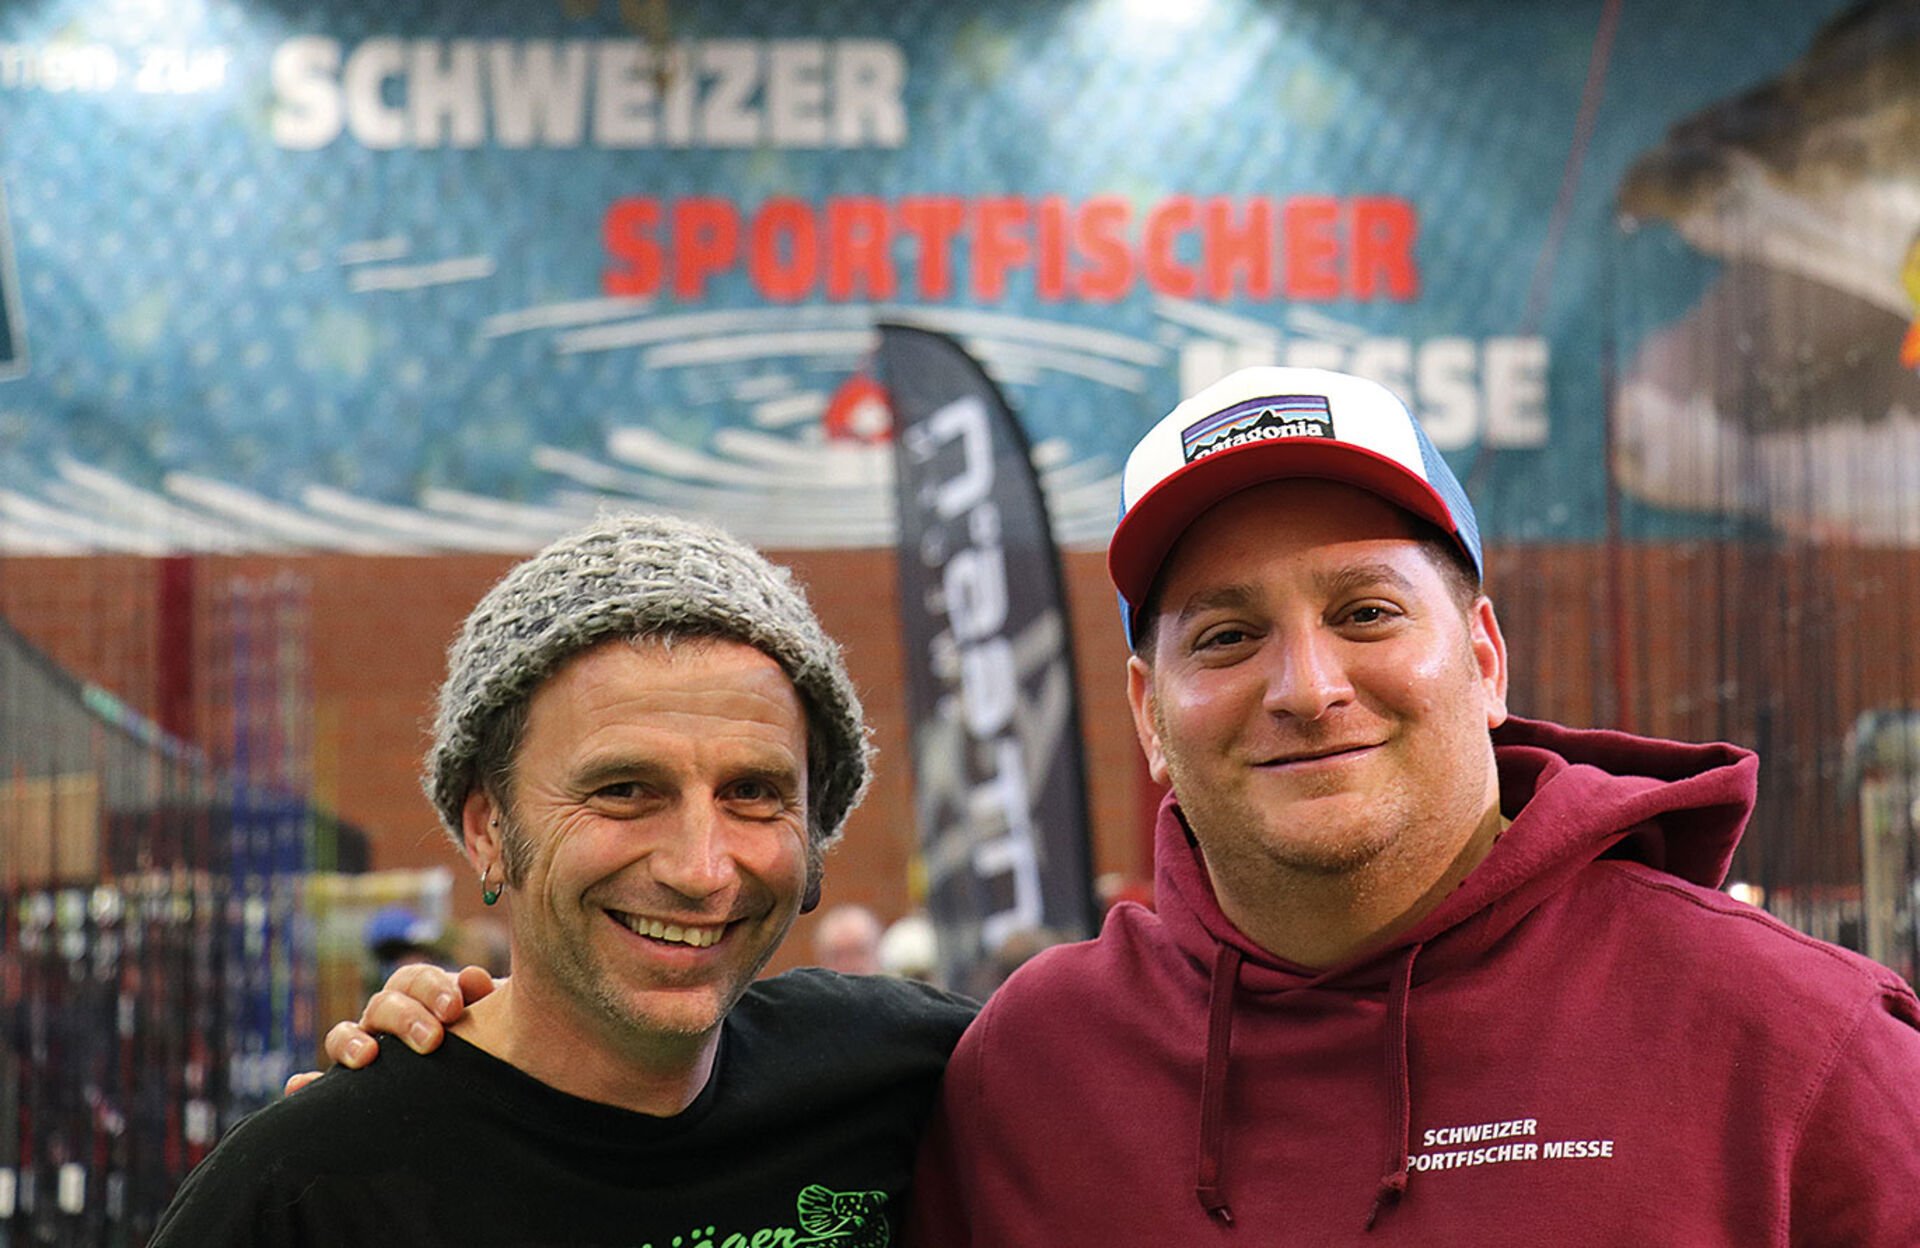  Die Schweizer Sportfischermesse ist ihr Werk: Ralf und Gezi in Oberglatt 2019.  